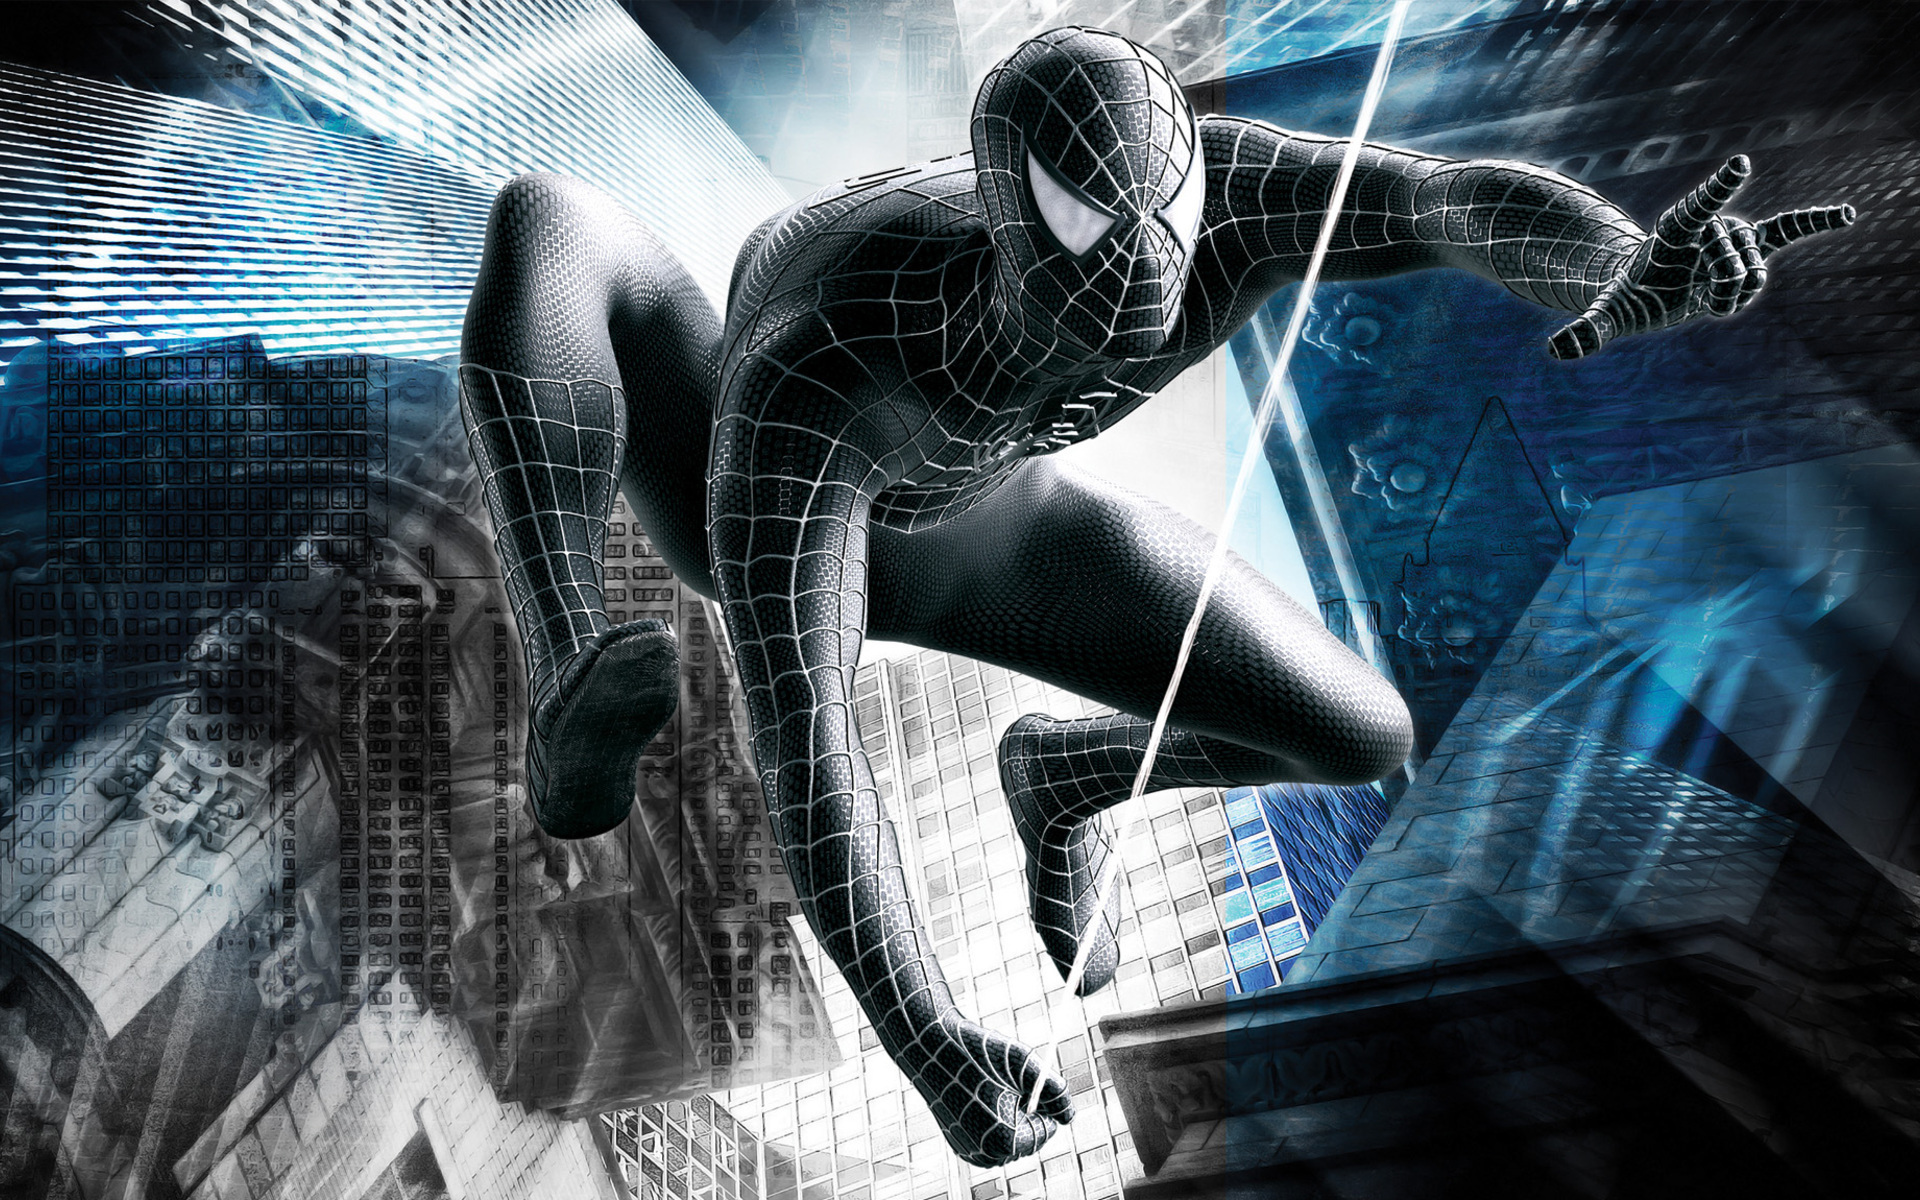 49+] Spiderman 3 Wallpapers - WallpaperSafari